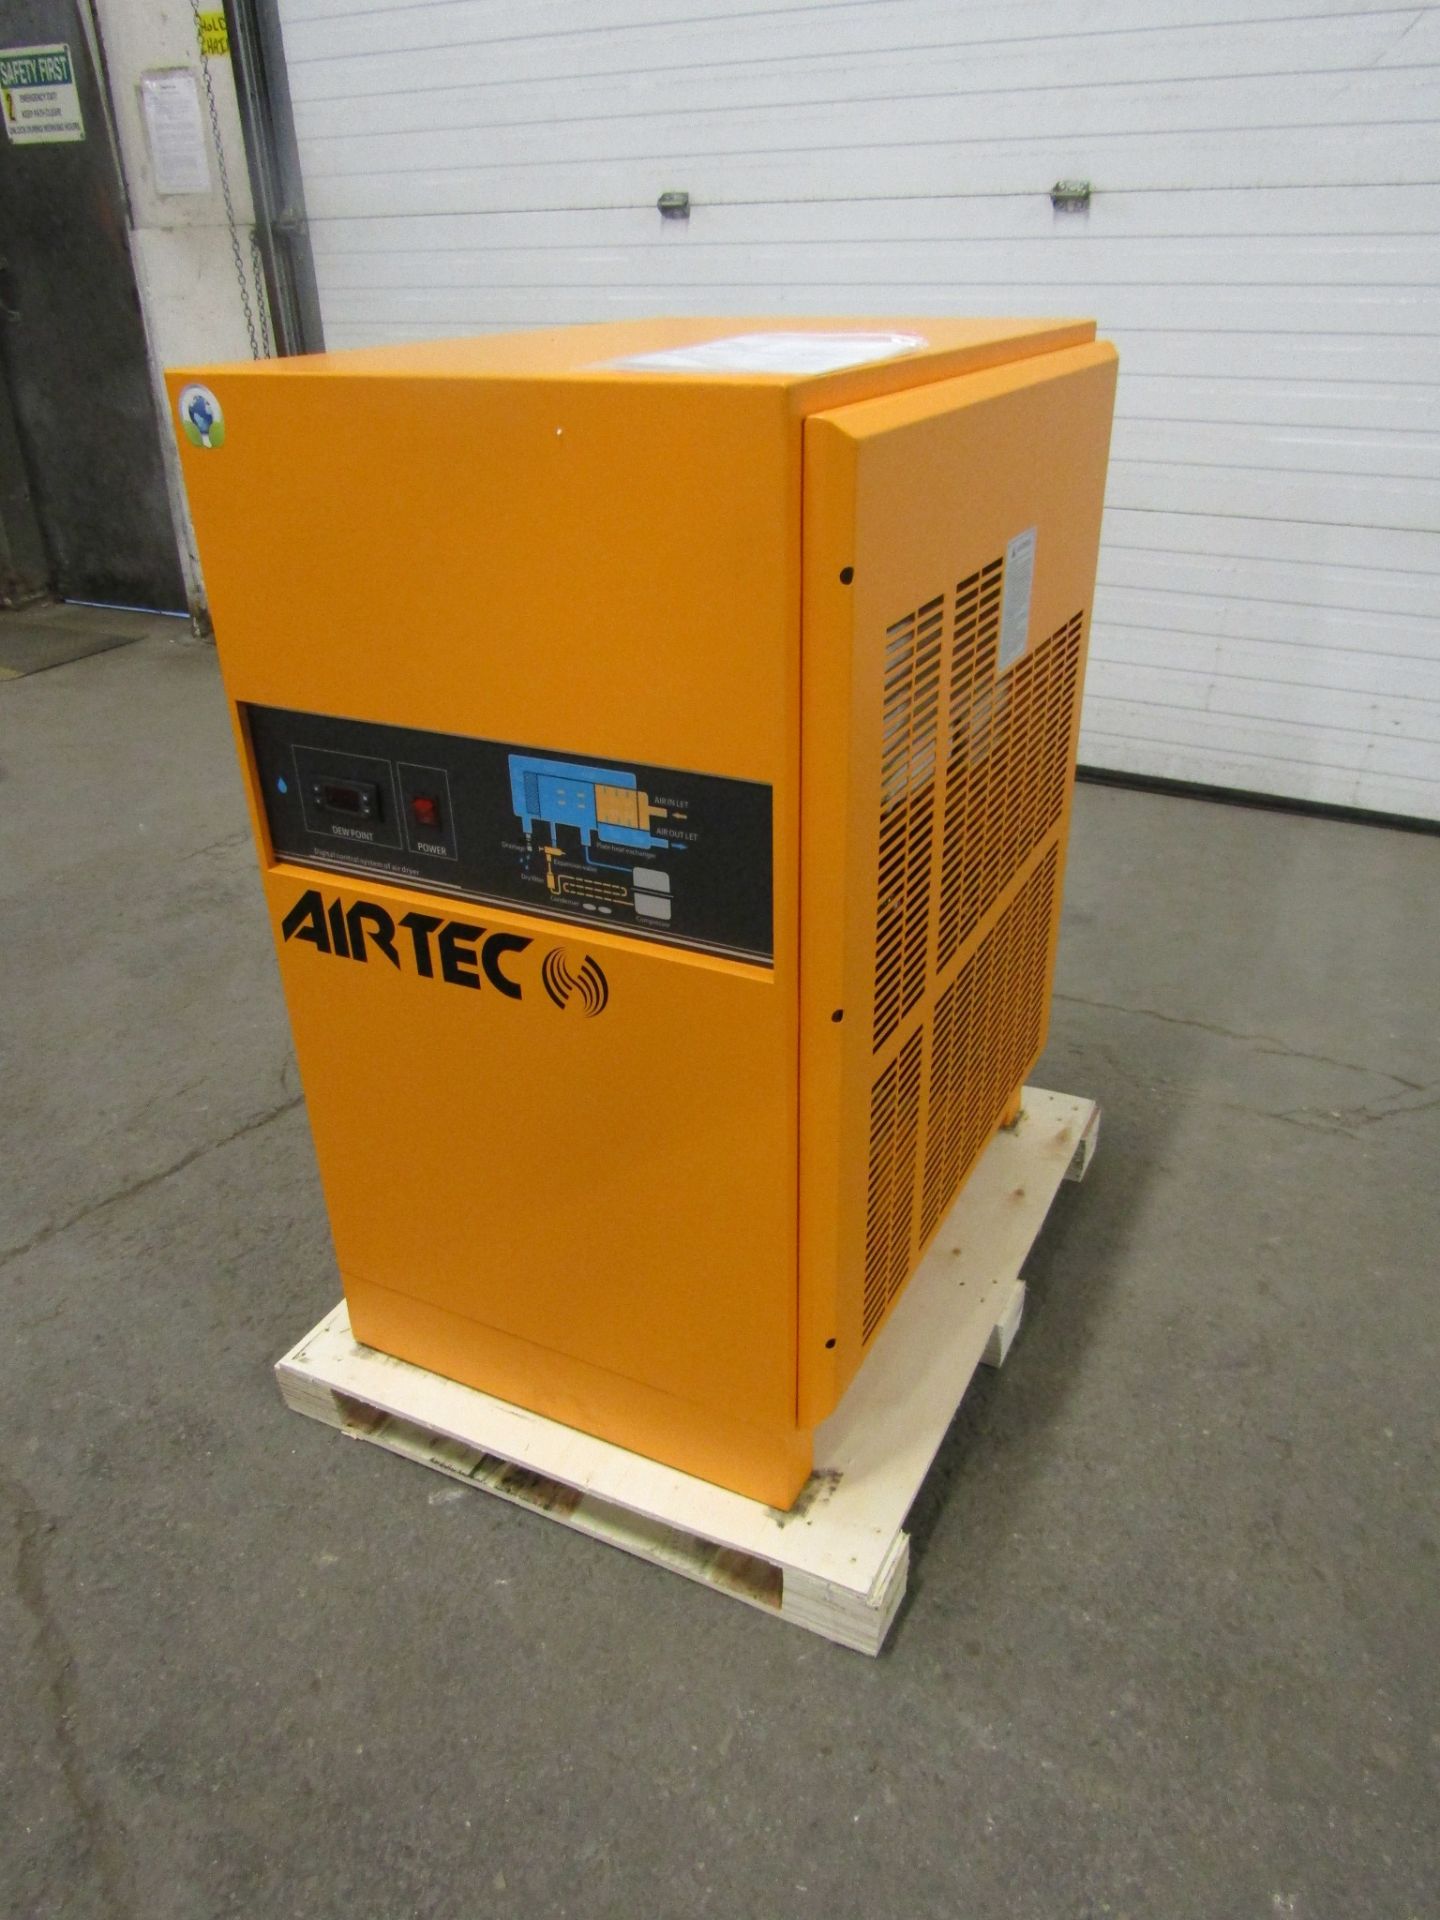 MINT Airtec Compressed Air Dryer 476 CFM UNUSED / NEW unit